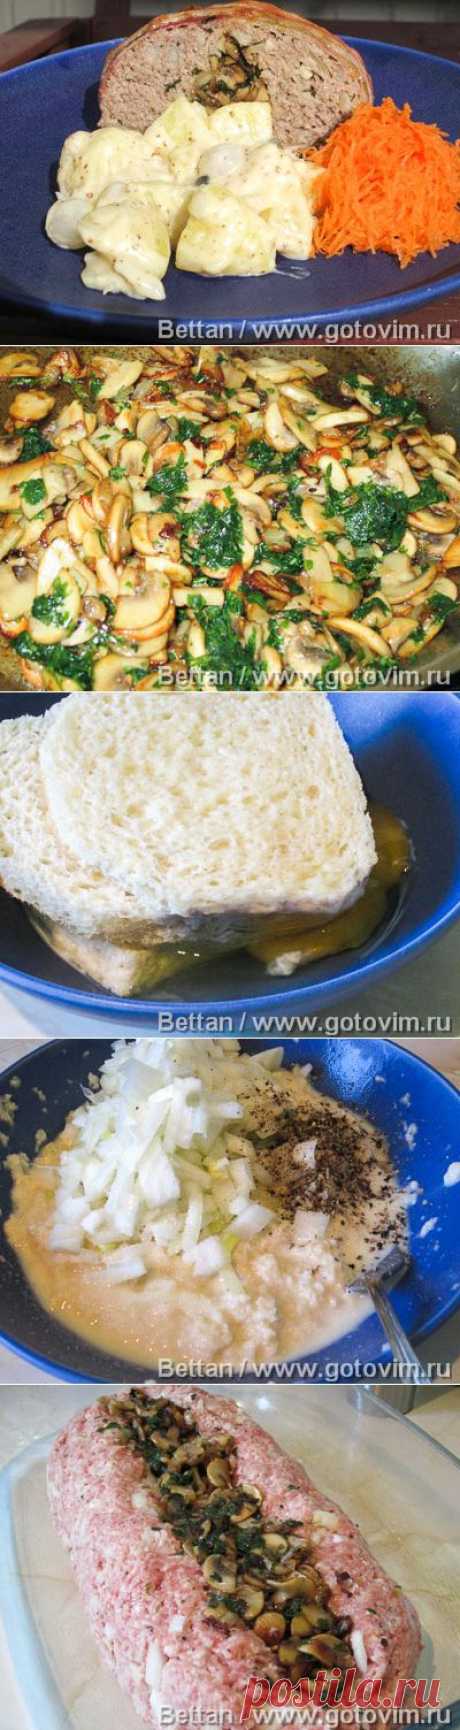 Мясной «батон» с грибами и картофель в горчичном соусе. Фото-рецепт / Готовим.РУ